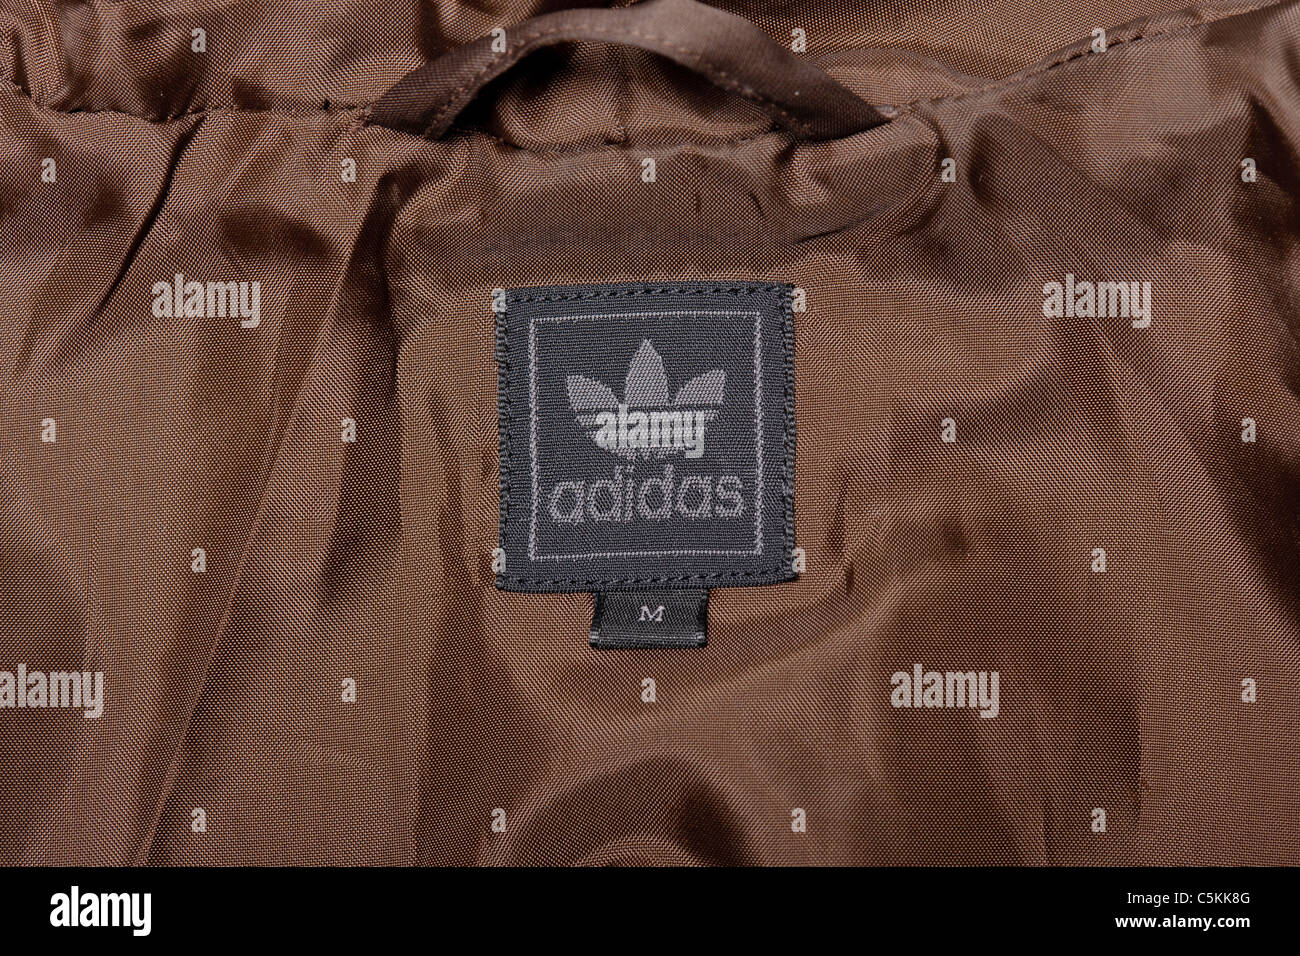 Adidas windbreaker Regenjacke Herren sportswear Jacke in Braun Nylon. Hooded Jacket. Label detail. Stockfoto